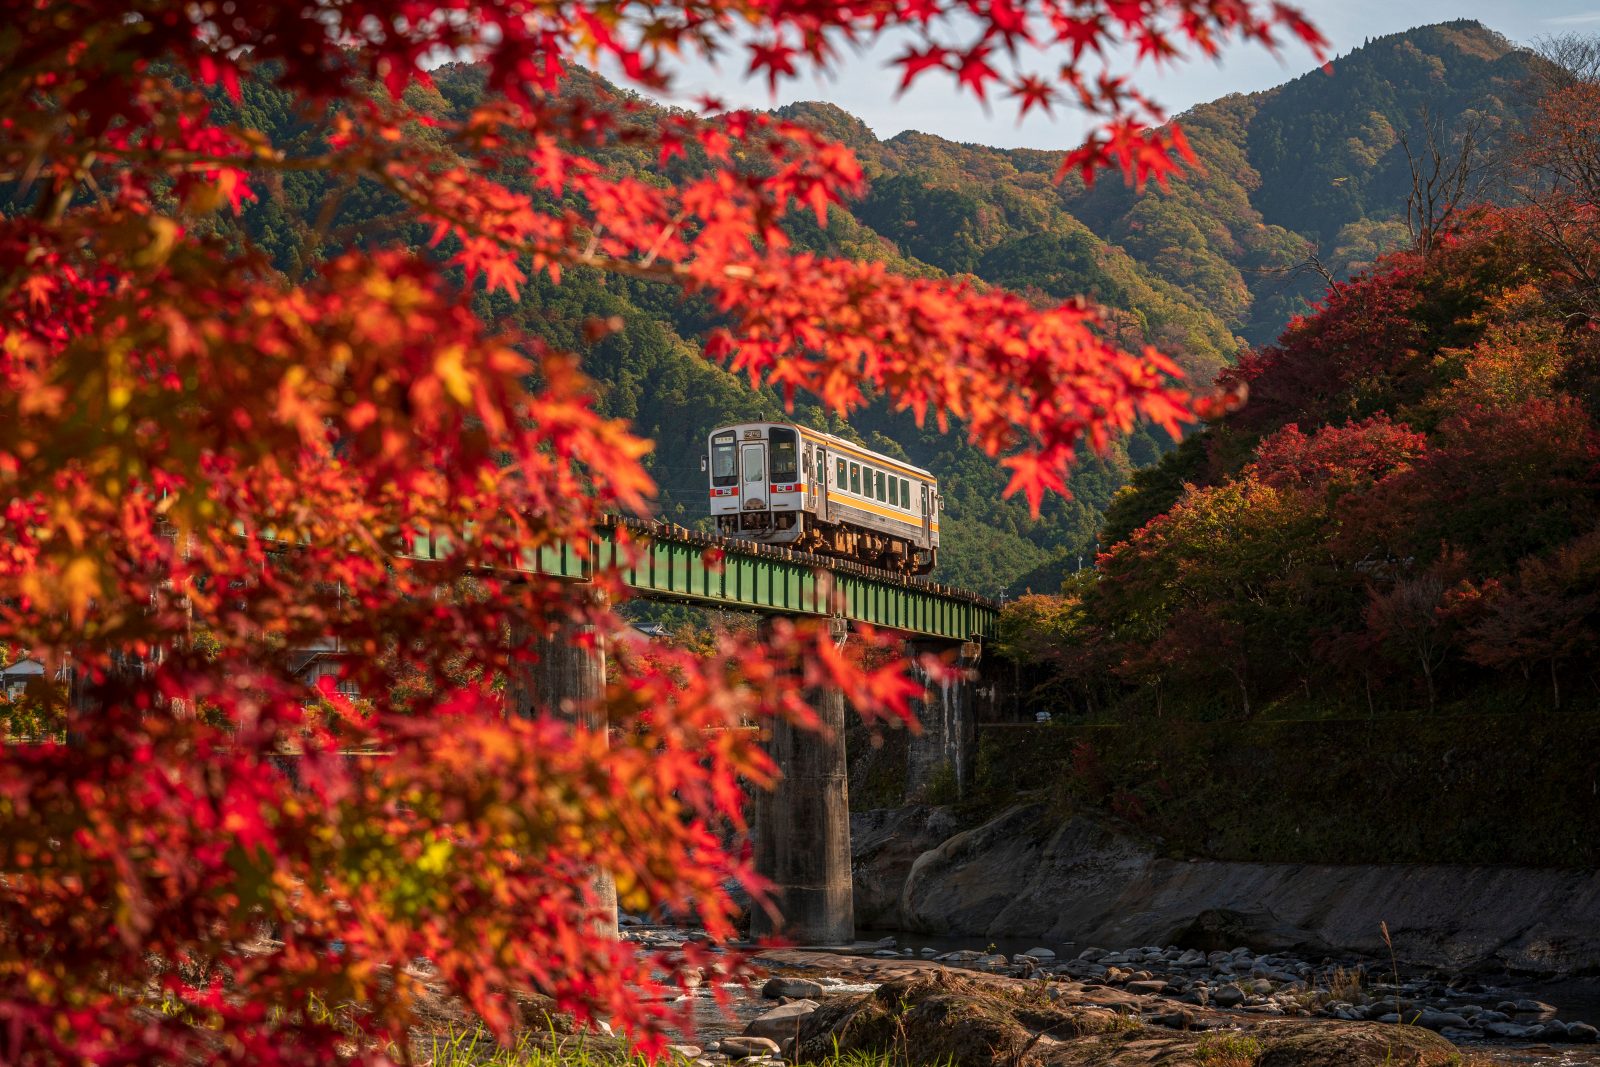 名松線の写真「紅葉の葉っぱと名松線」